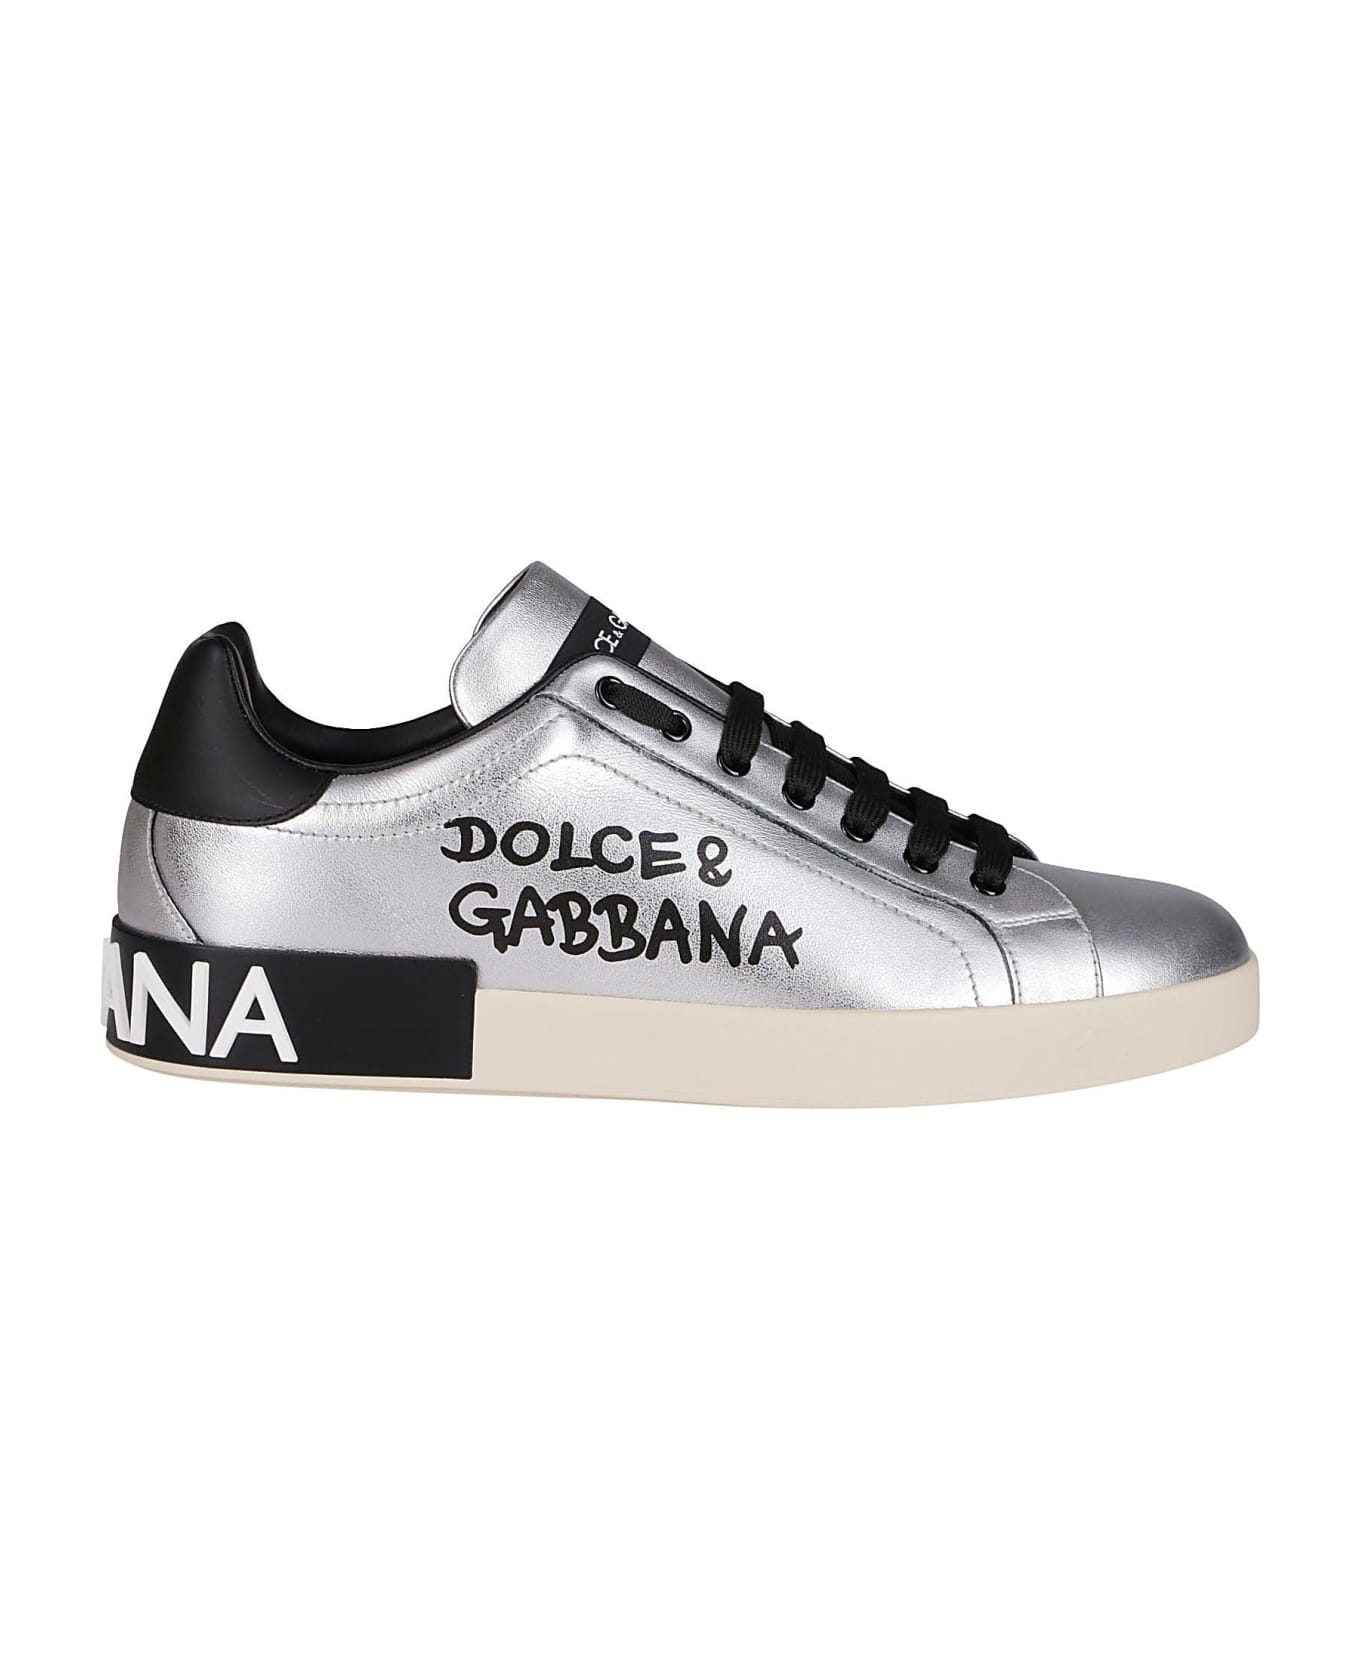 Dolce & Gabbana Portofino Sneakers - Argento